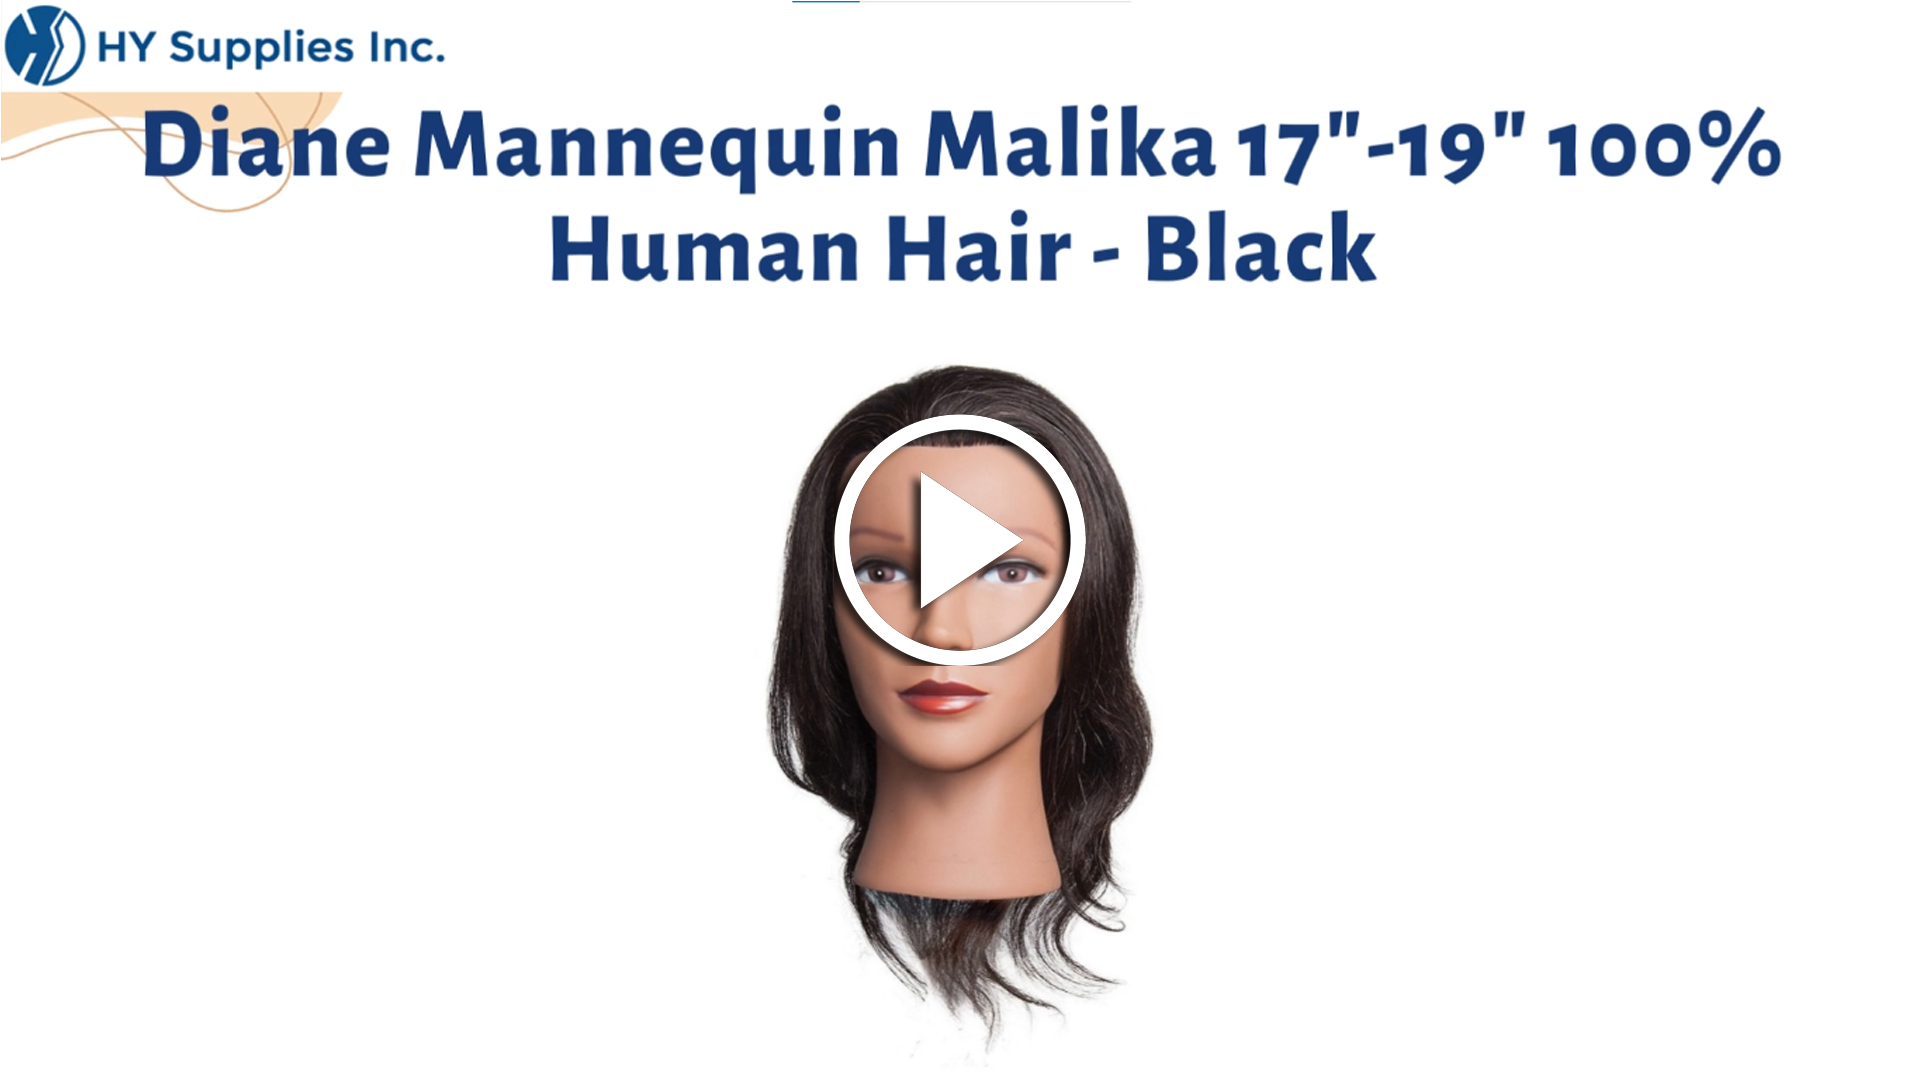 Diane Mannequin Malika 17"-19"100% Human Hair - Black